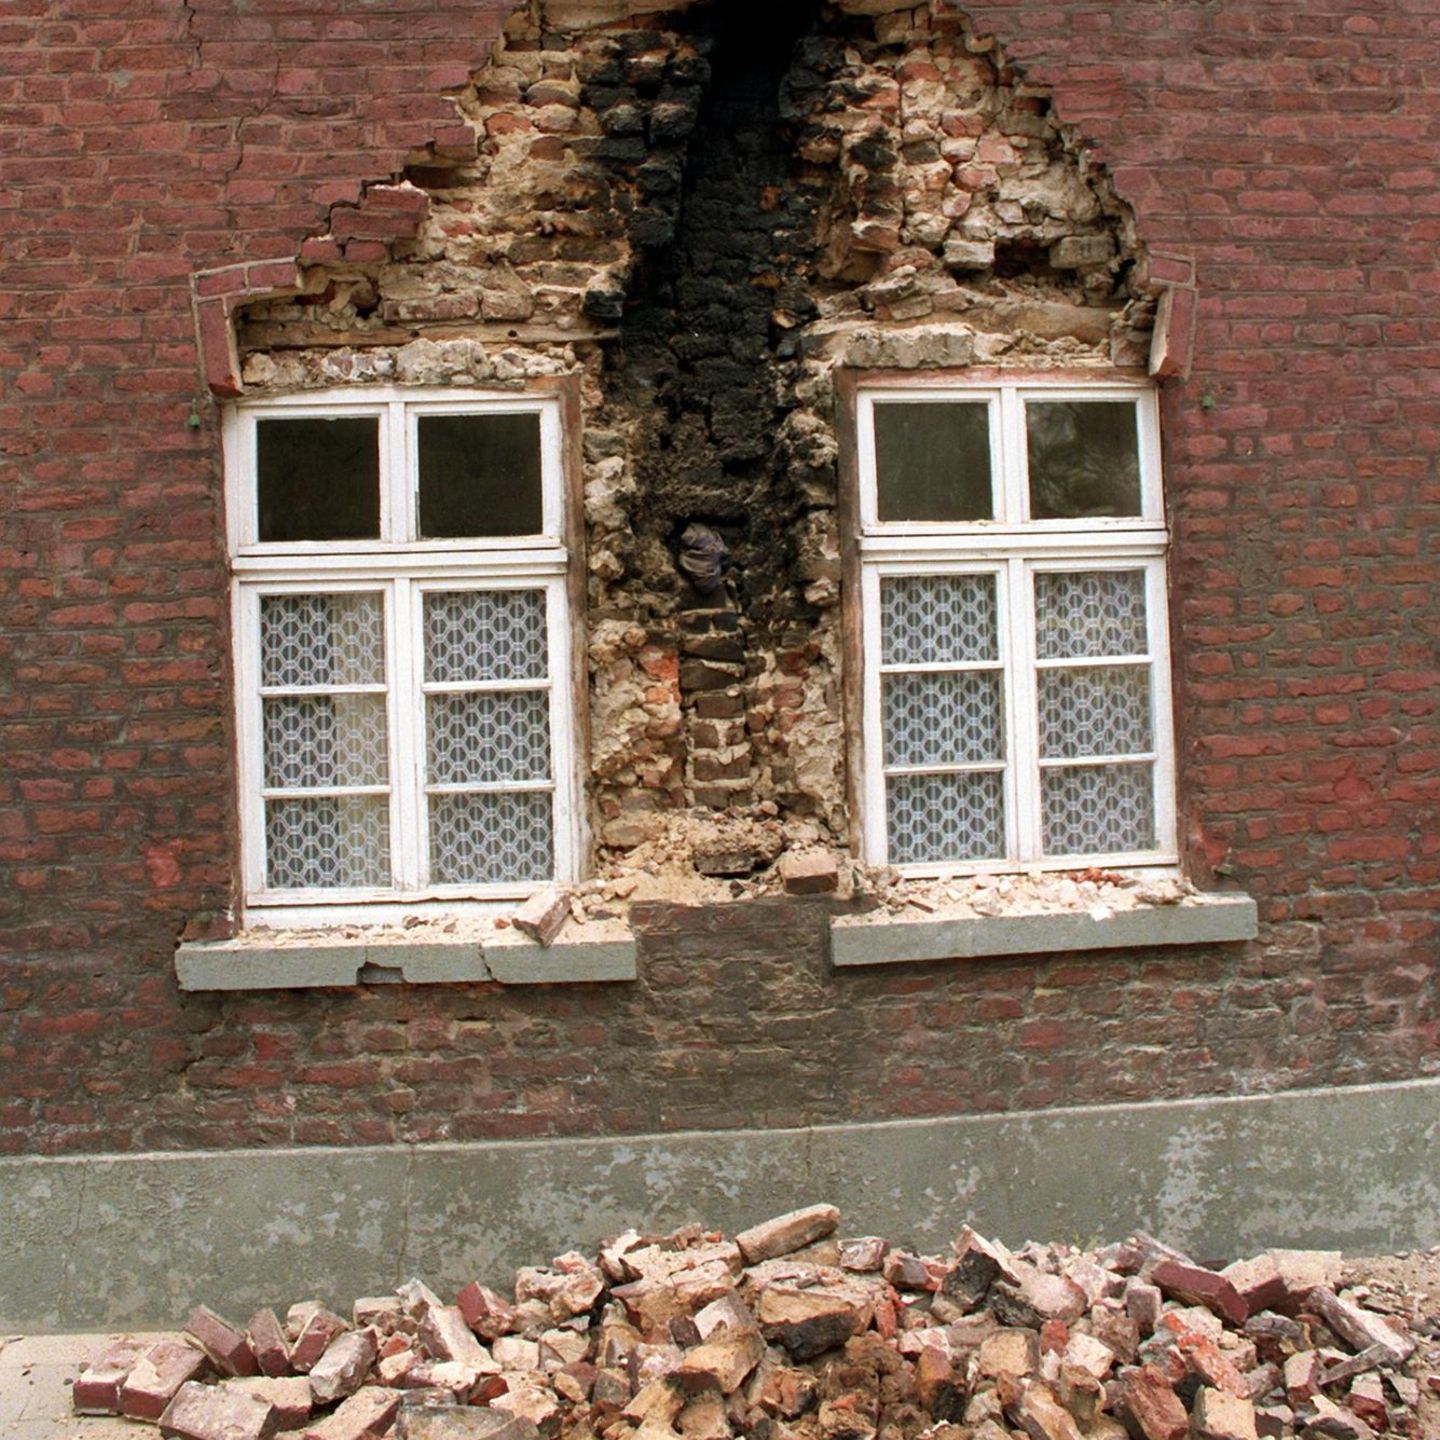 Obwohl es immer wieder kleinere Beben gibt, wurde die Erdbebengefahr in Deutschland lange unterschätzt. Hier hat das Erdbeben von Roermond in den Niederlanden im April 1992 eine Häuserfassade in Heinsberg zerstört